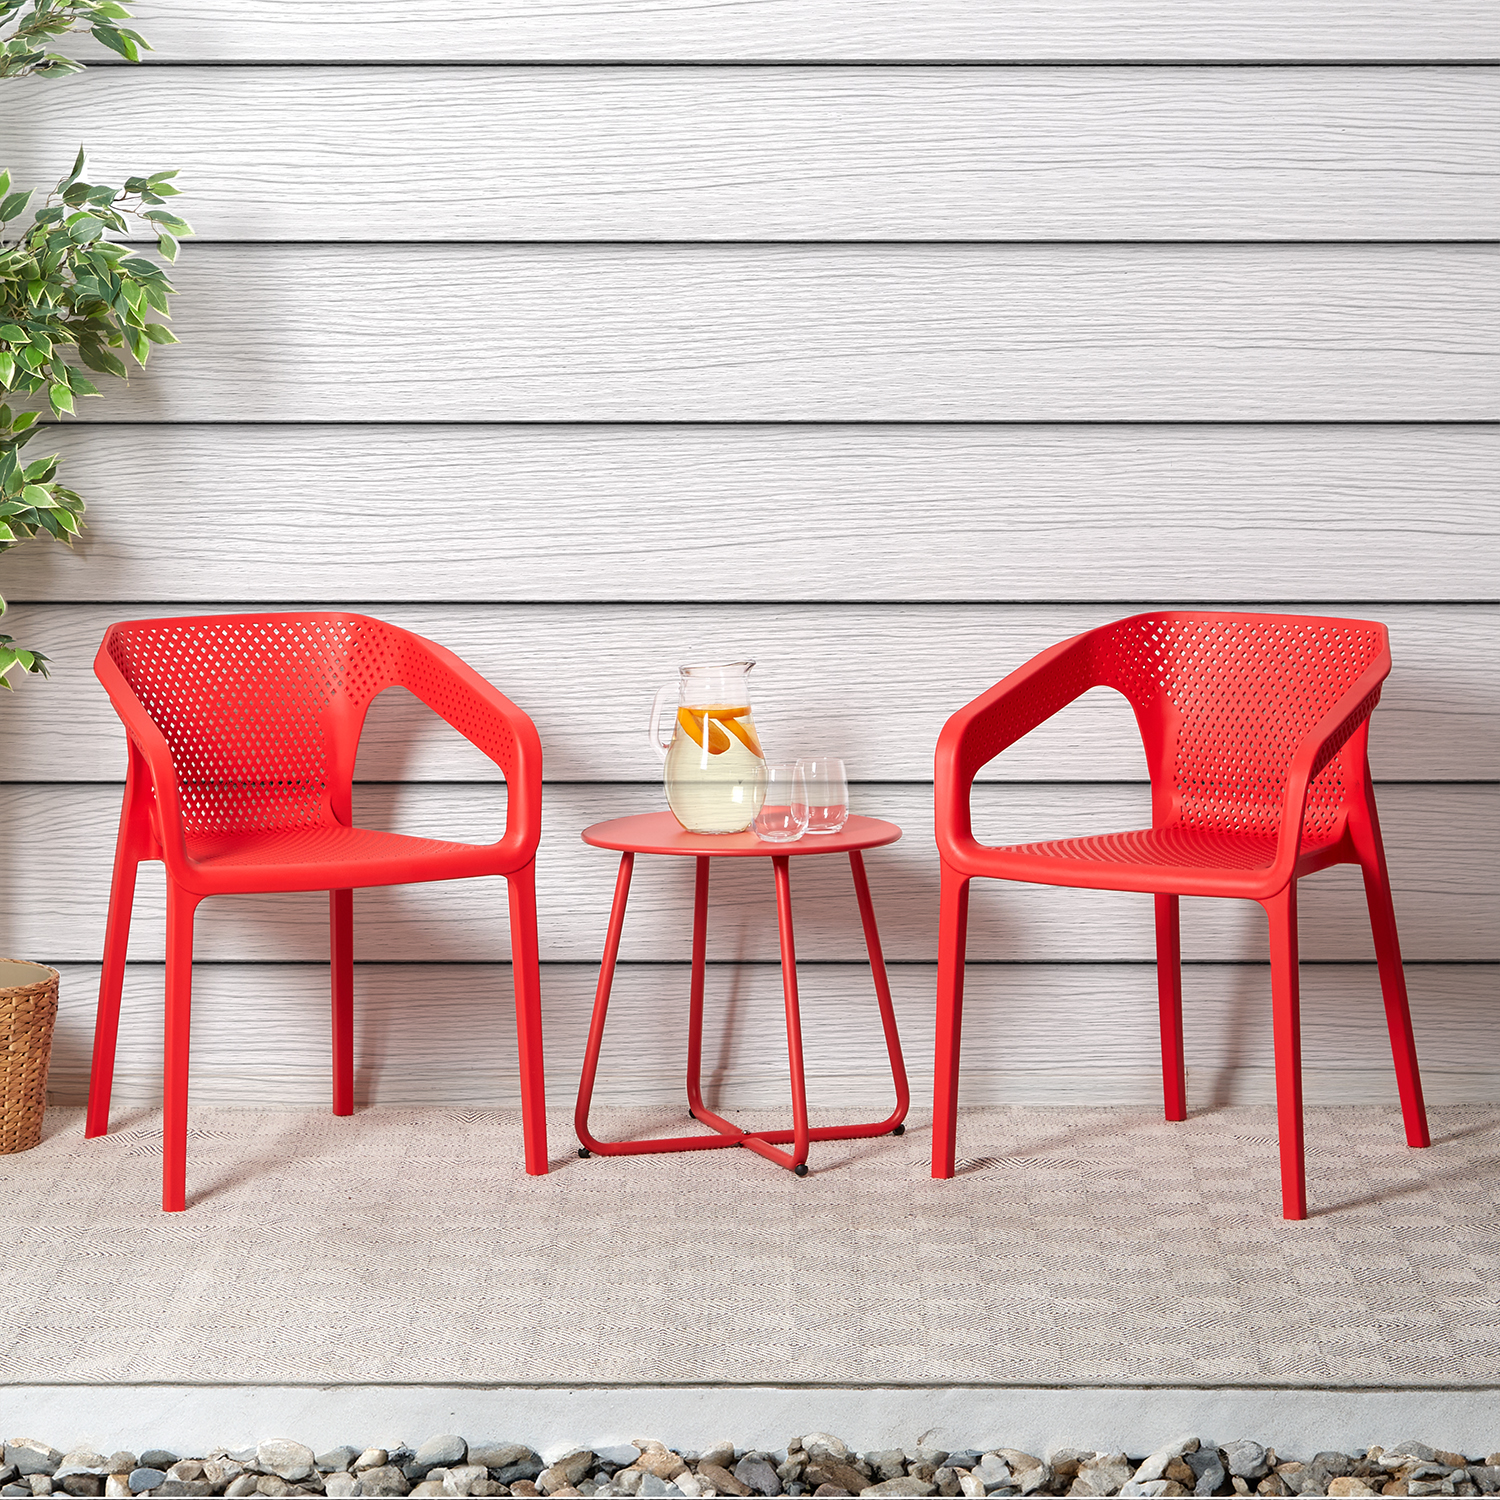 Chaise de jardin avec accoudoirs Rouge Lot de 6 Fauteuils de jardin Plastique Chaises exterieur Chaises empilable